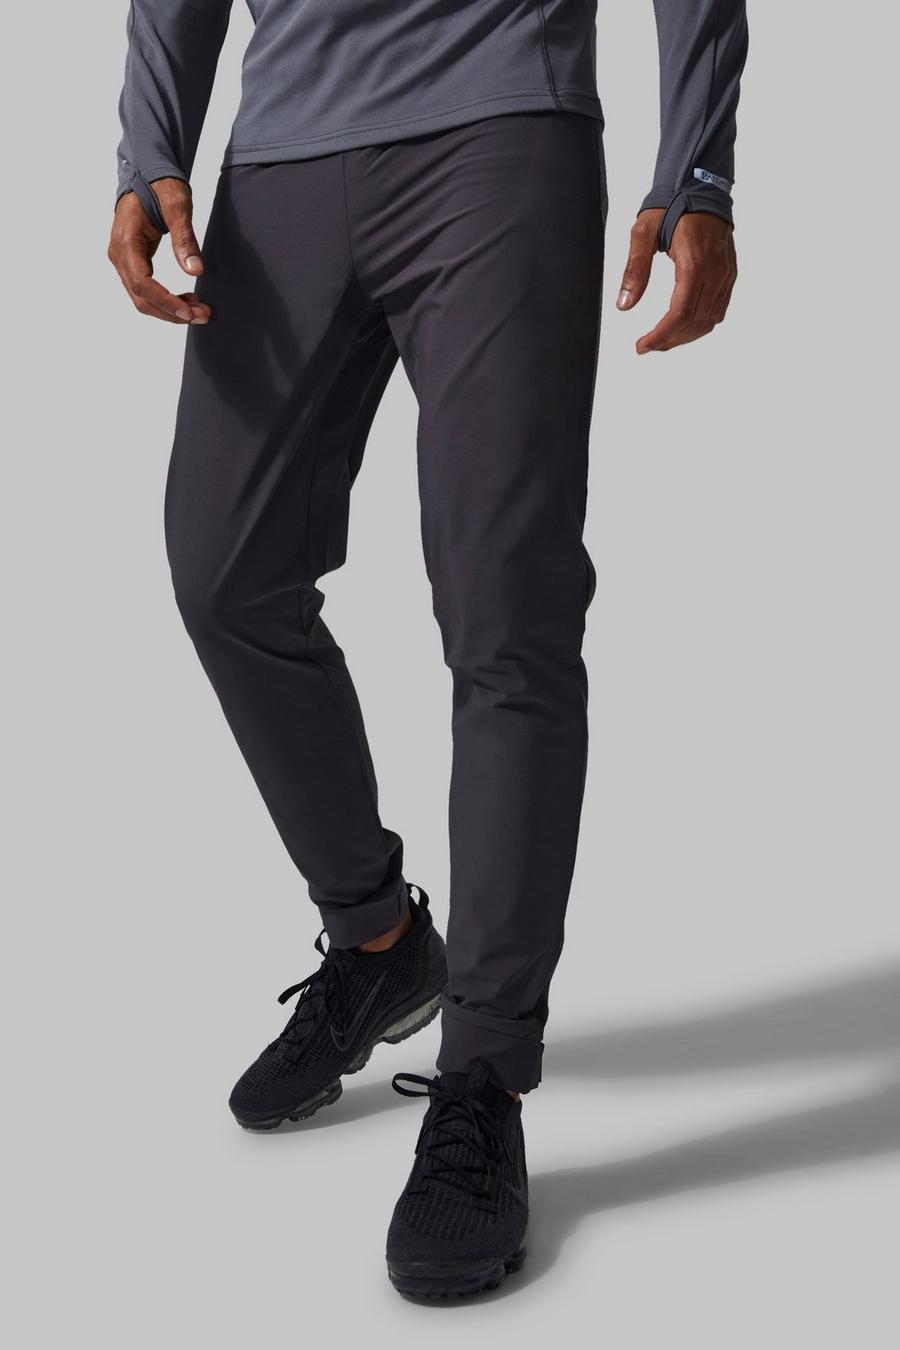 Pantalón deportivo MAN Active ajustado con velcro reflectante, Charcoal gris